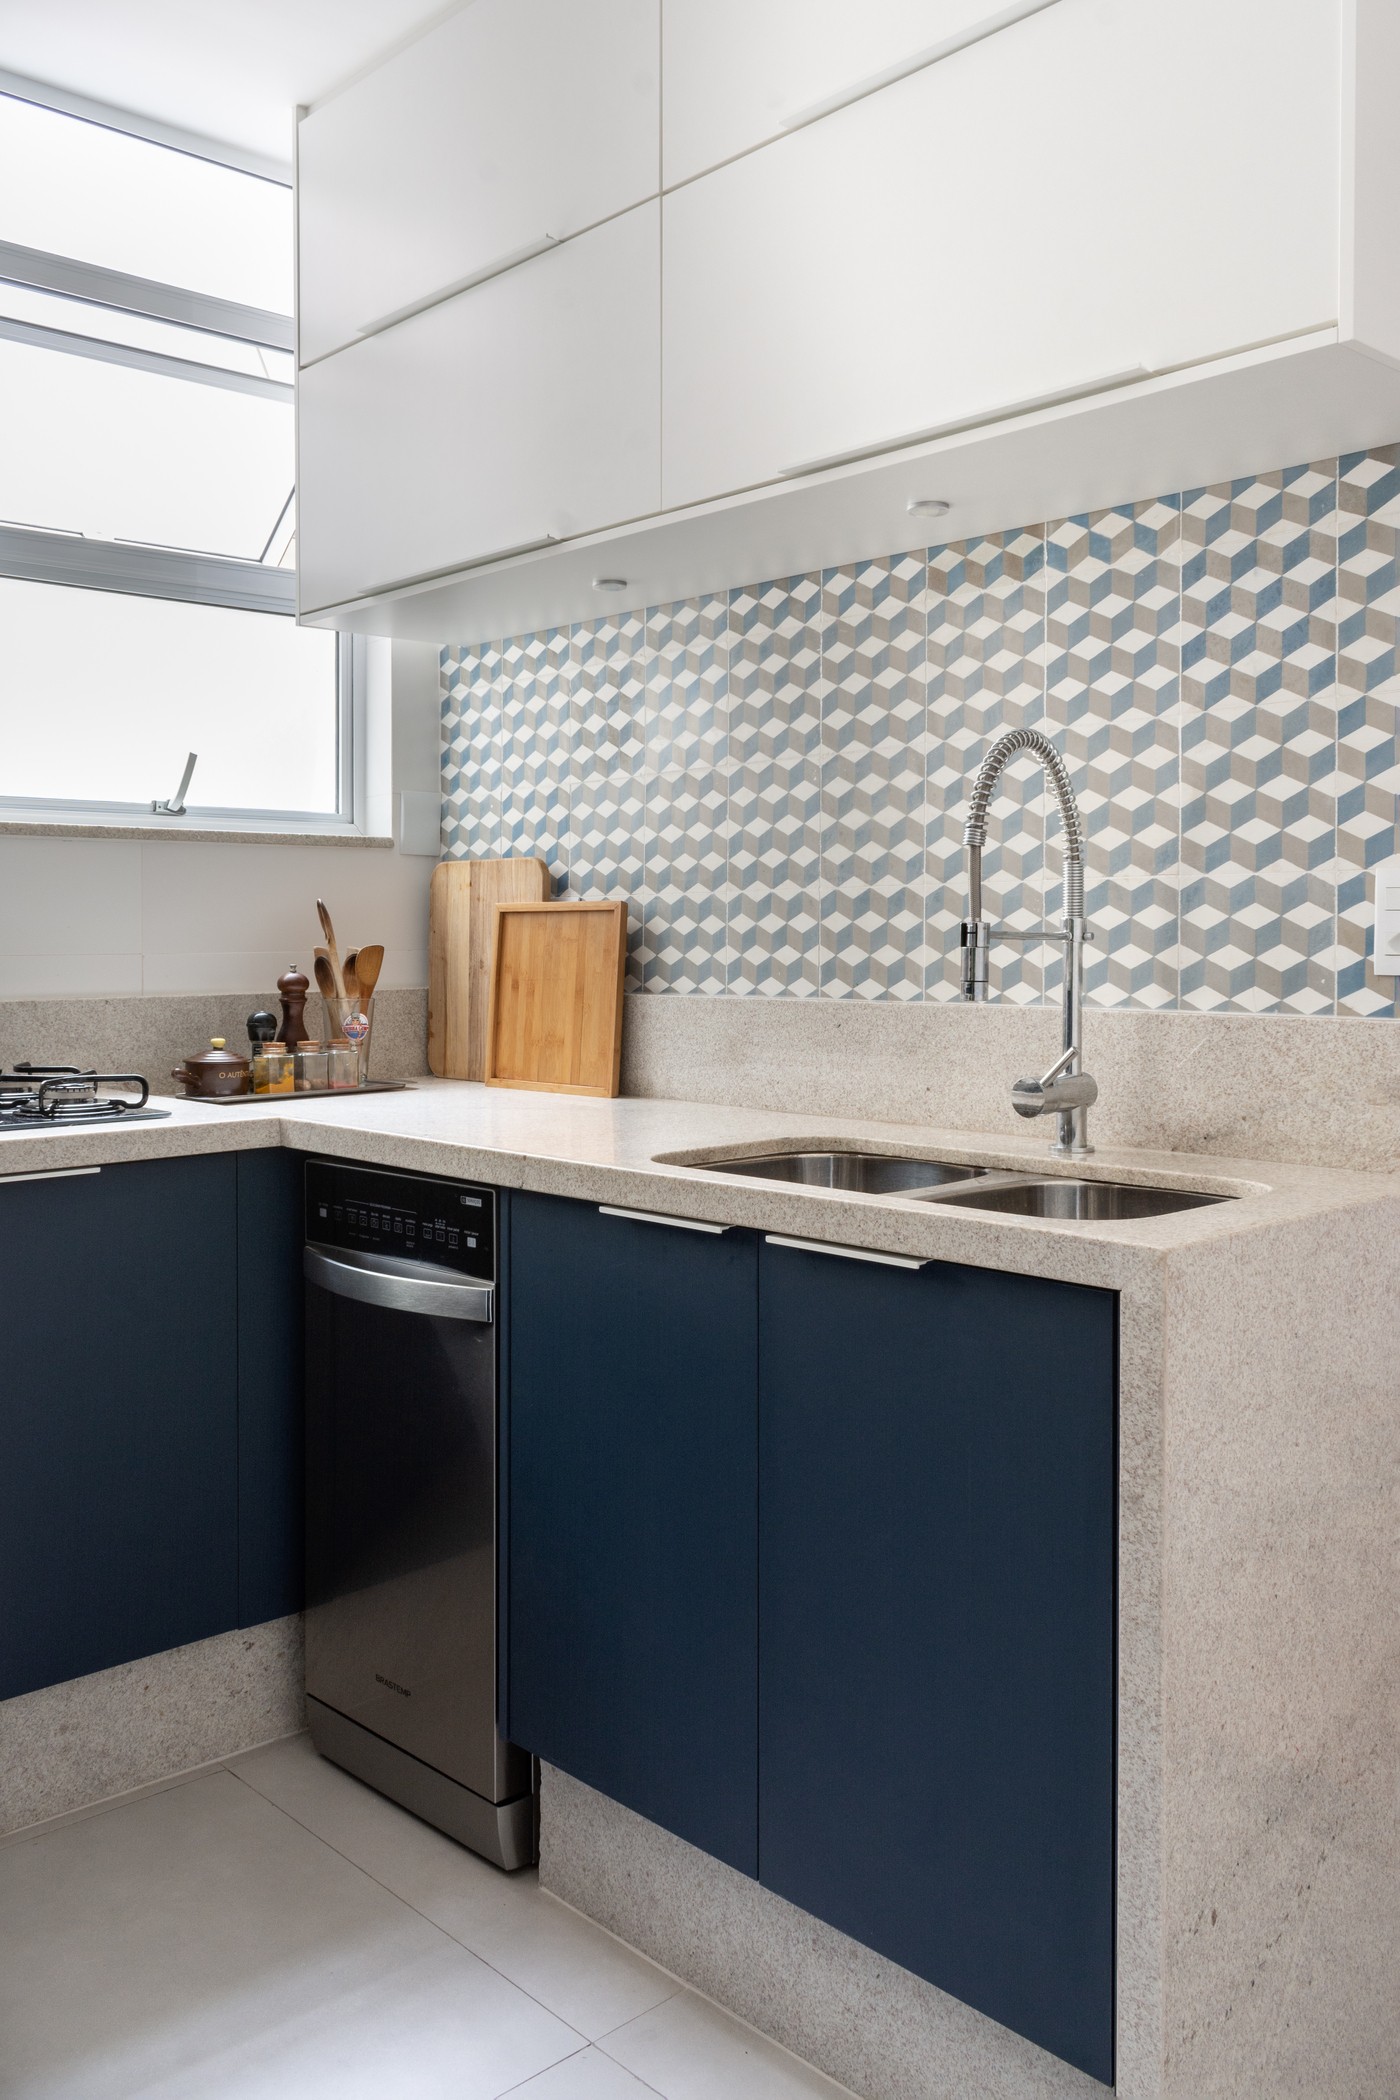 Décor do dia: cozinha tem marcenaria azul e ladrilho hidráulico geométrico (Foto: Lília Mendel)